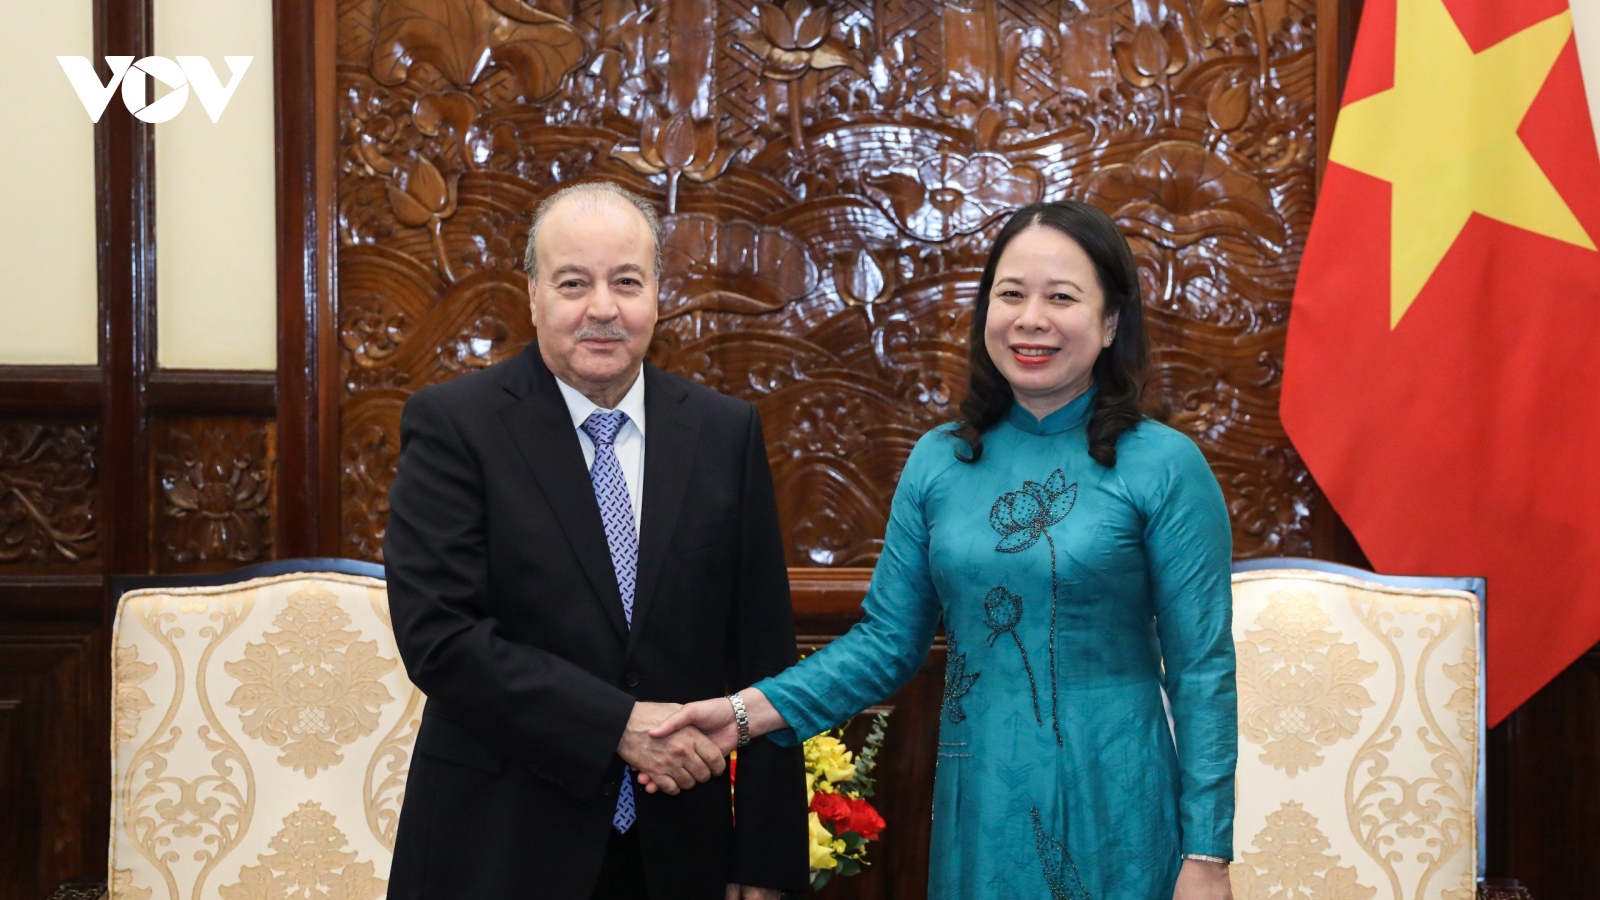 Quyền Chủ tịch nước Võ Thị Ánh Xuân tiếp Đại sứ Cộng hòa Algeria đến chào từ biệt